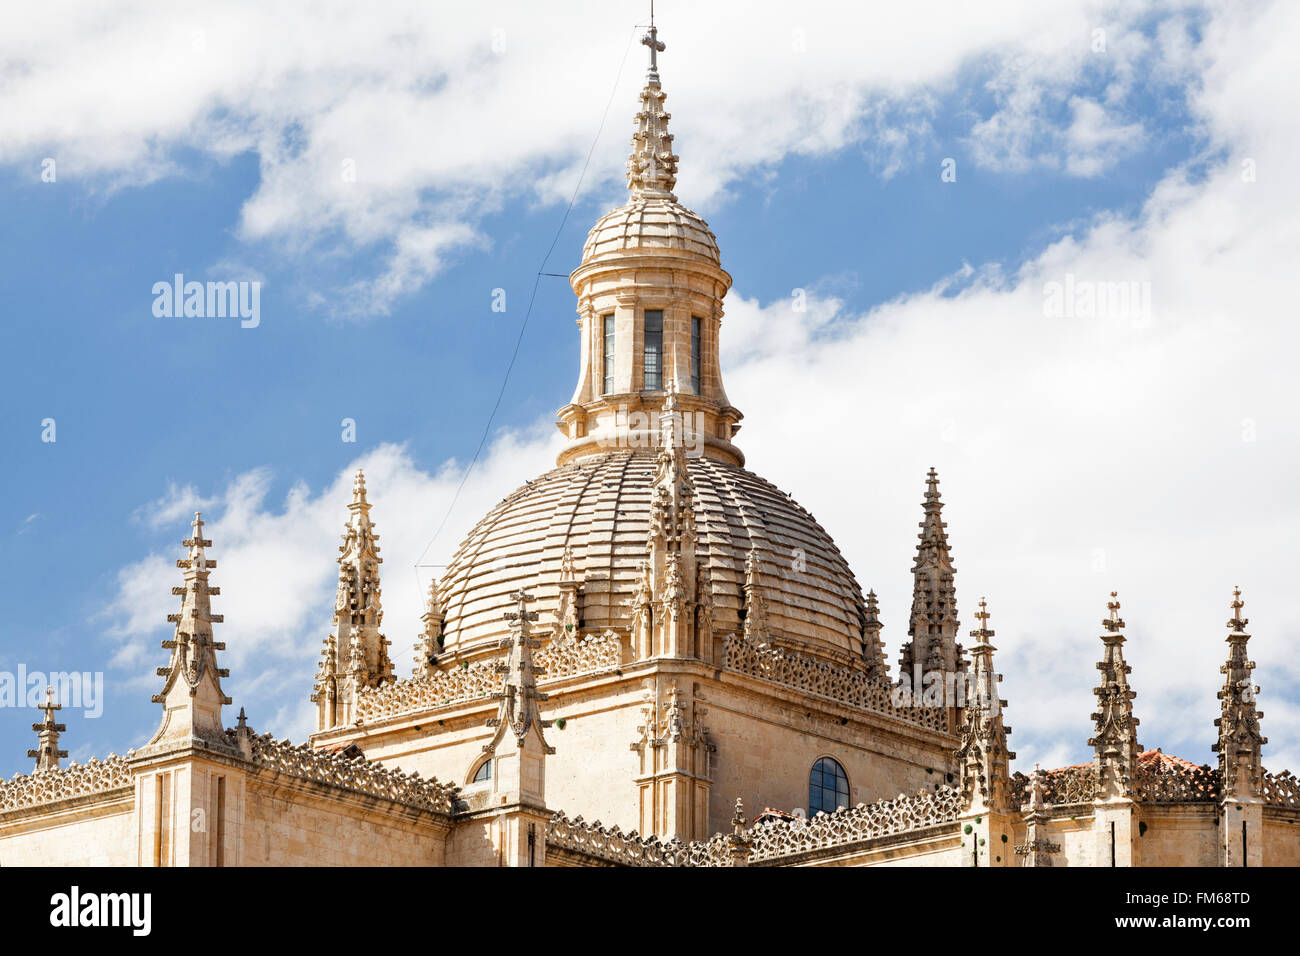 Una vista esterna di un edificio religioso, la cupola della cattedrale di Segovia, Spagna. Foto Stock